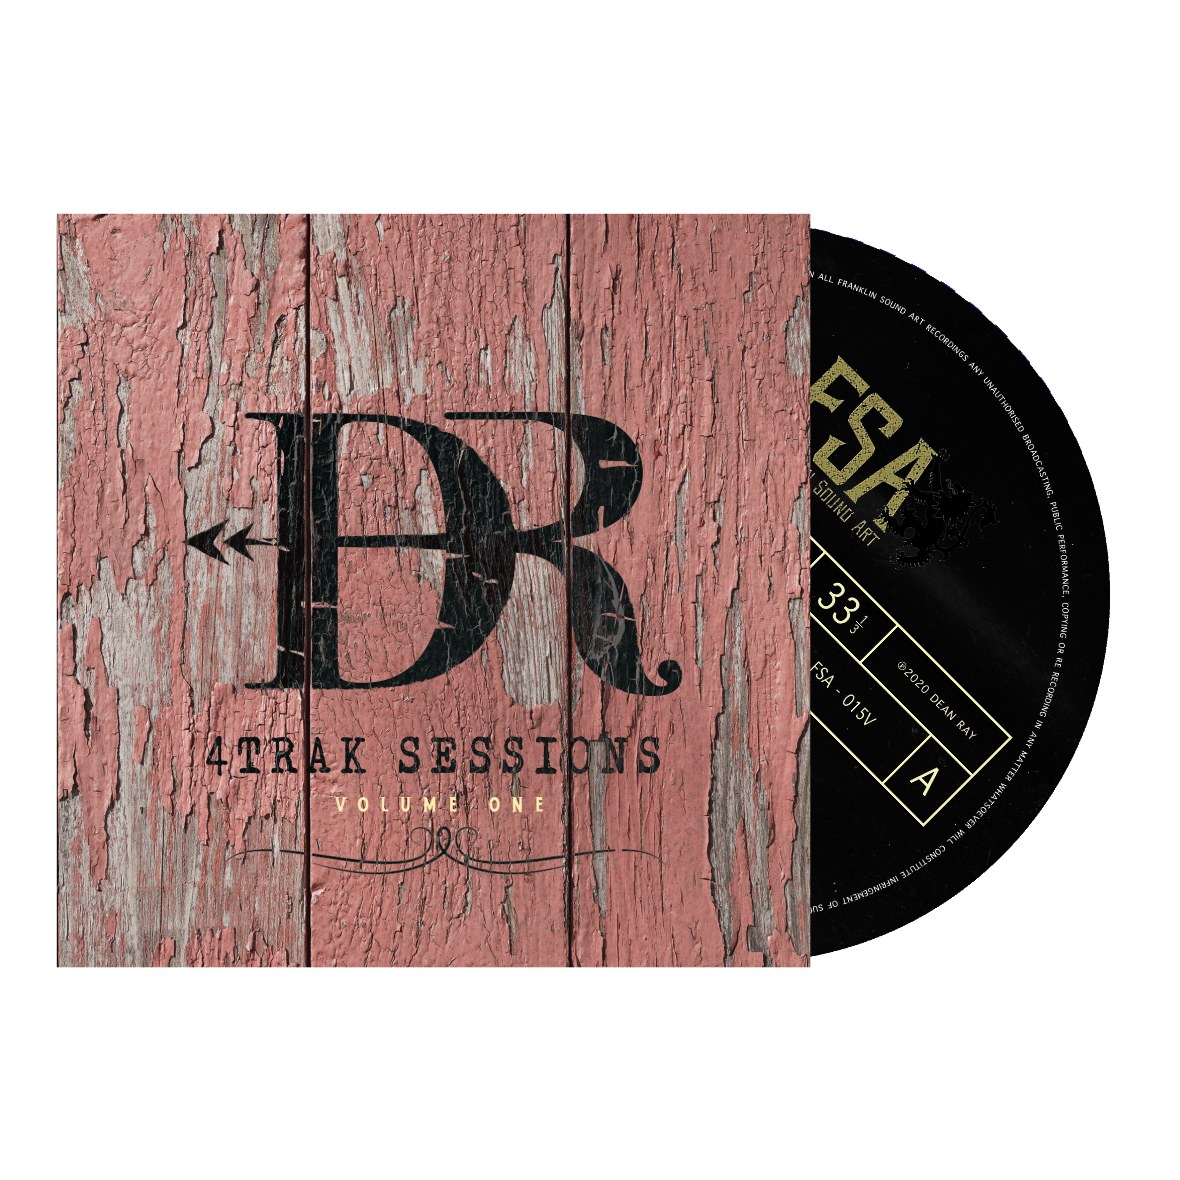 NEW - 4TRAK Sessions Vinyl LP $44.99 (Copy) (Copy) (Copy) (Copy)